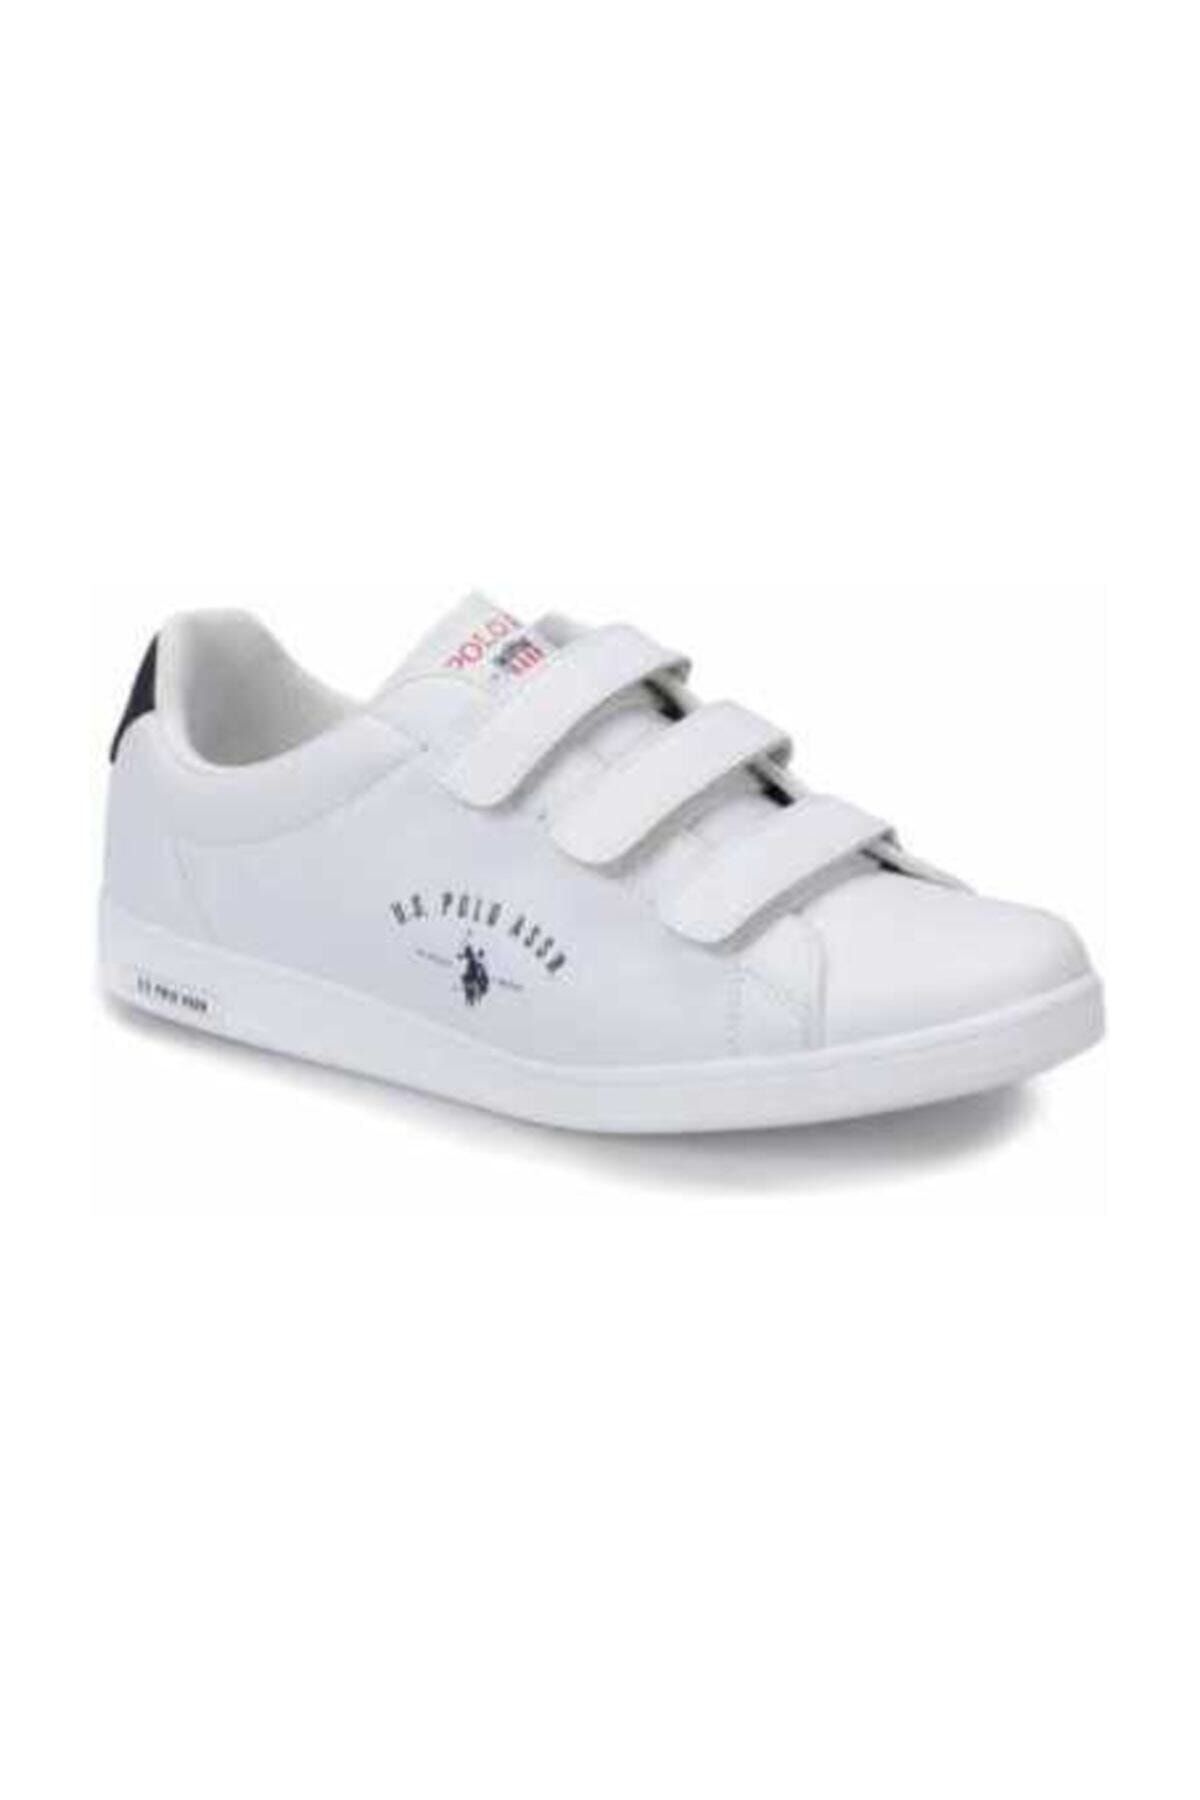 U.S. Polo Assn. SINGER Beyaz Erkek Sneaker Ayakkabı 100374063